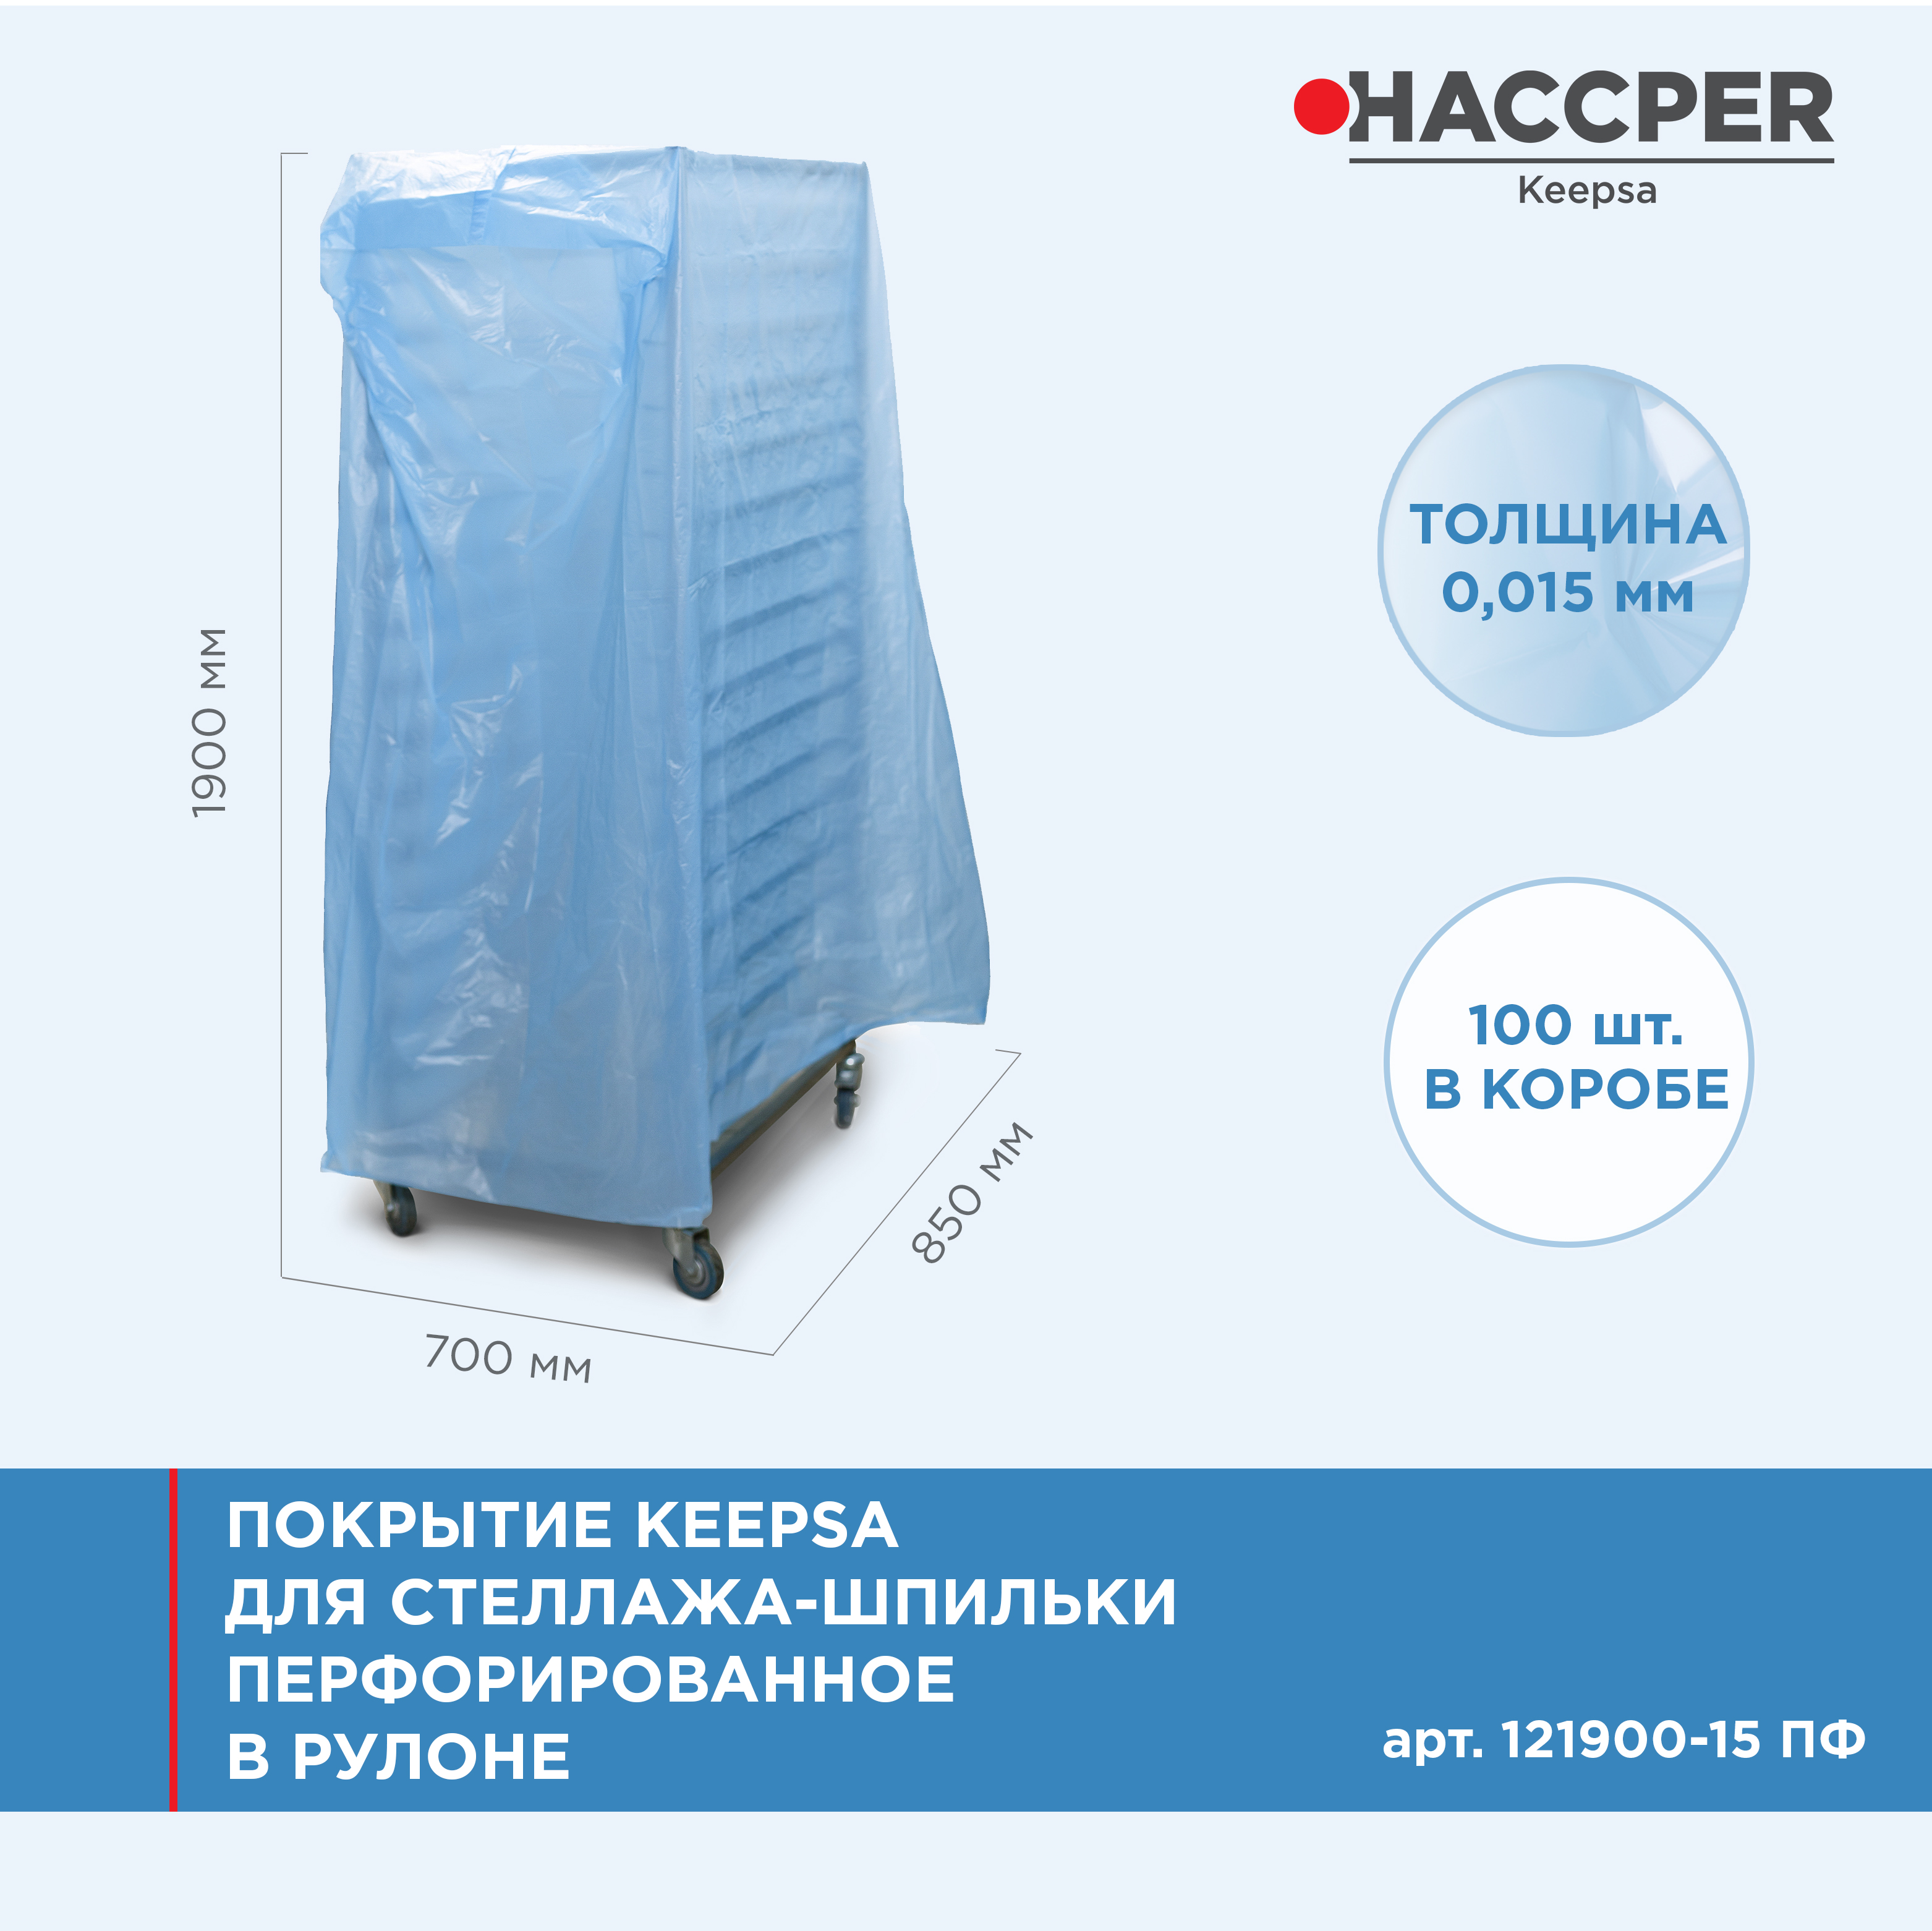 Покрытие HACCPER Keepsa для стеллажа-шпильки перфорированное 850х700х1900 мм